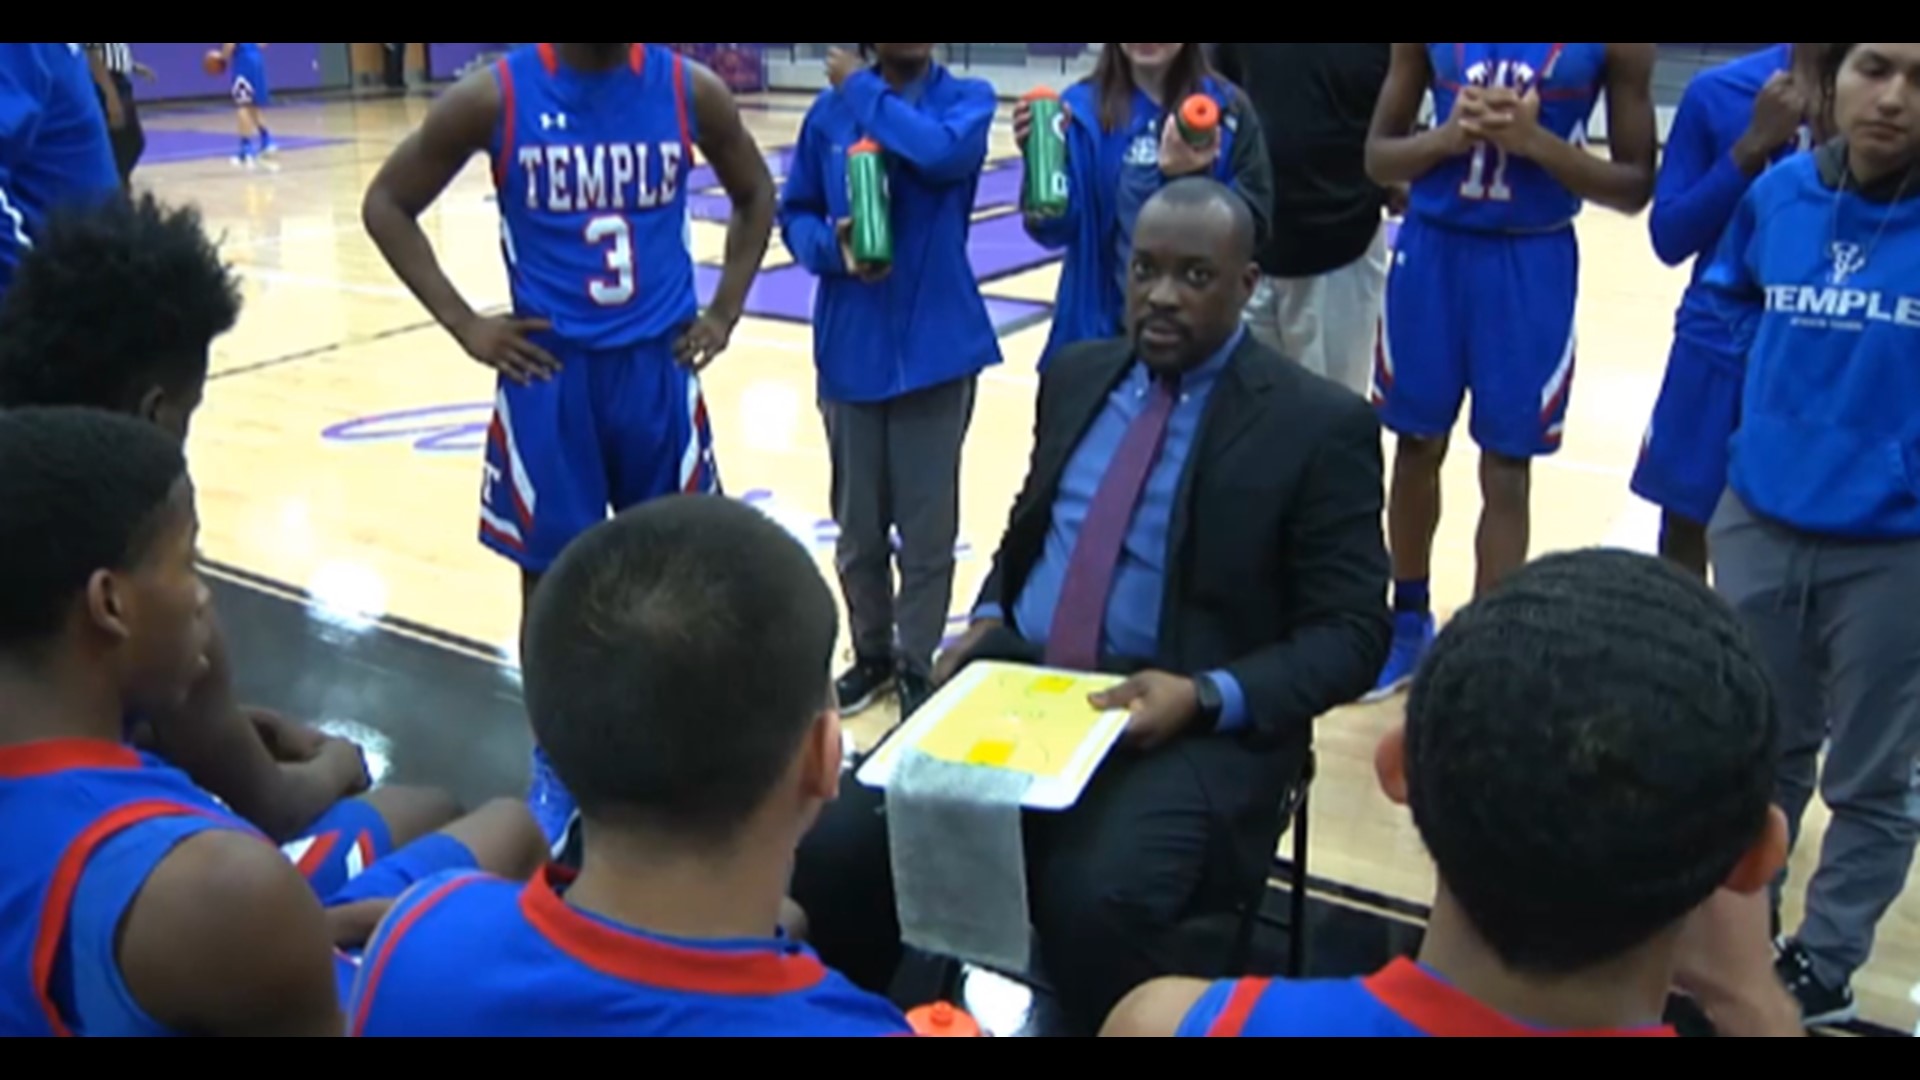 Temple basketball coach heads to Frisco | kcentv.com